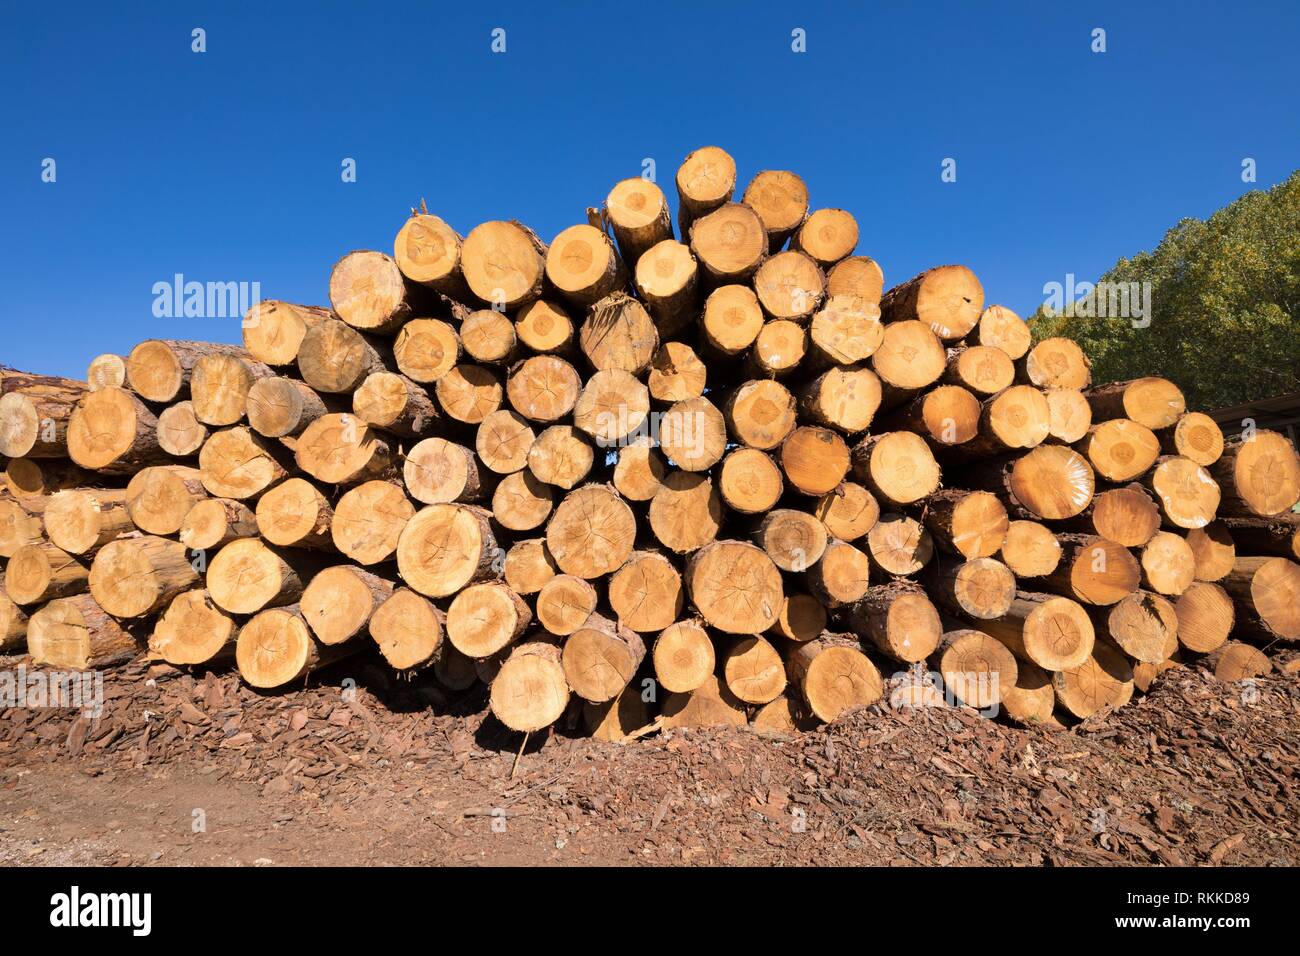 Grosse pile de coupes rondes de bois d'arbre, tronçonneuse électrique  rouge. Les grumes sont sciées à partir des troncs de bouleau empilés dans  une pile. Bois de chauffage de bouleau. Compost s